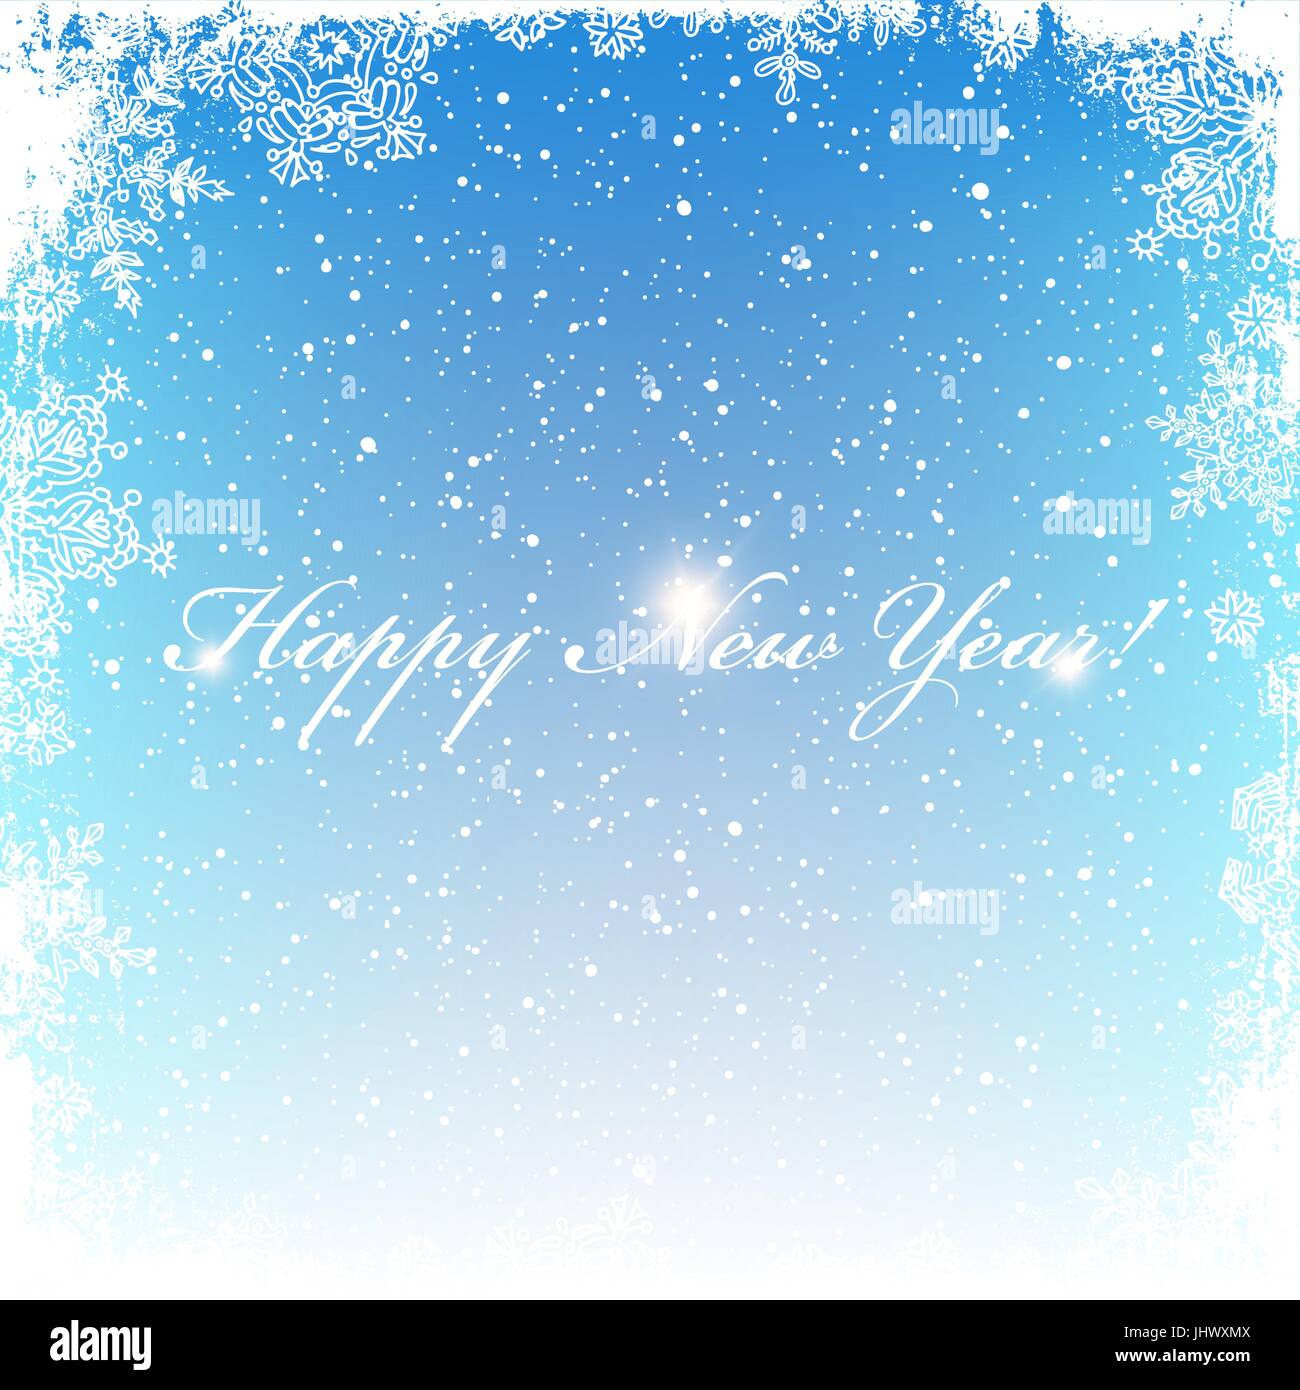 Neujahrs Postkarte. Frostigen Rahmen. Mittelbereich für Gruß isoliert. Weihnachten Schnee Hintergrund. Vektor-Illustration. Stock Vektor